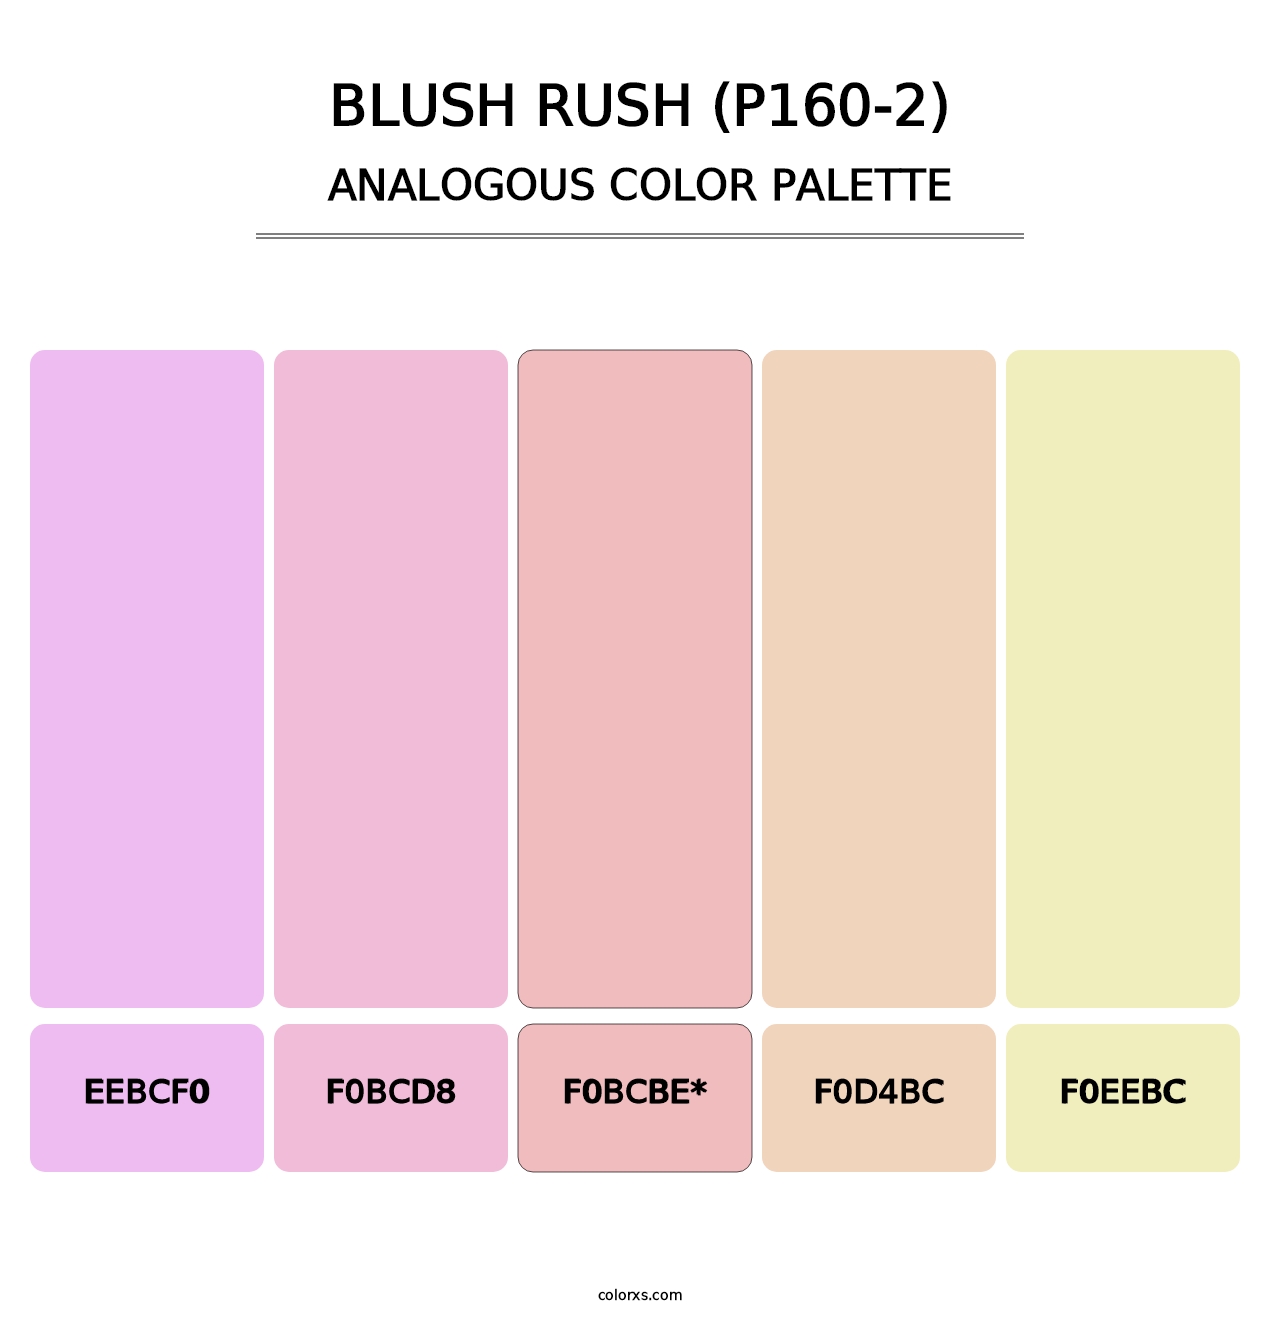 Blush Rush (P160-2) - Analogous Color Palette